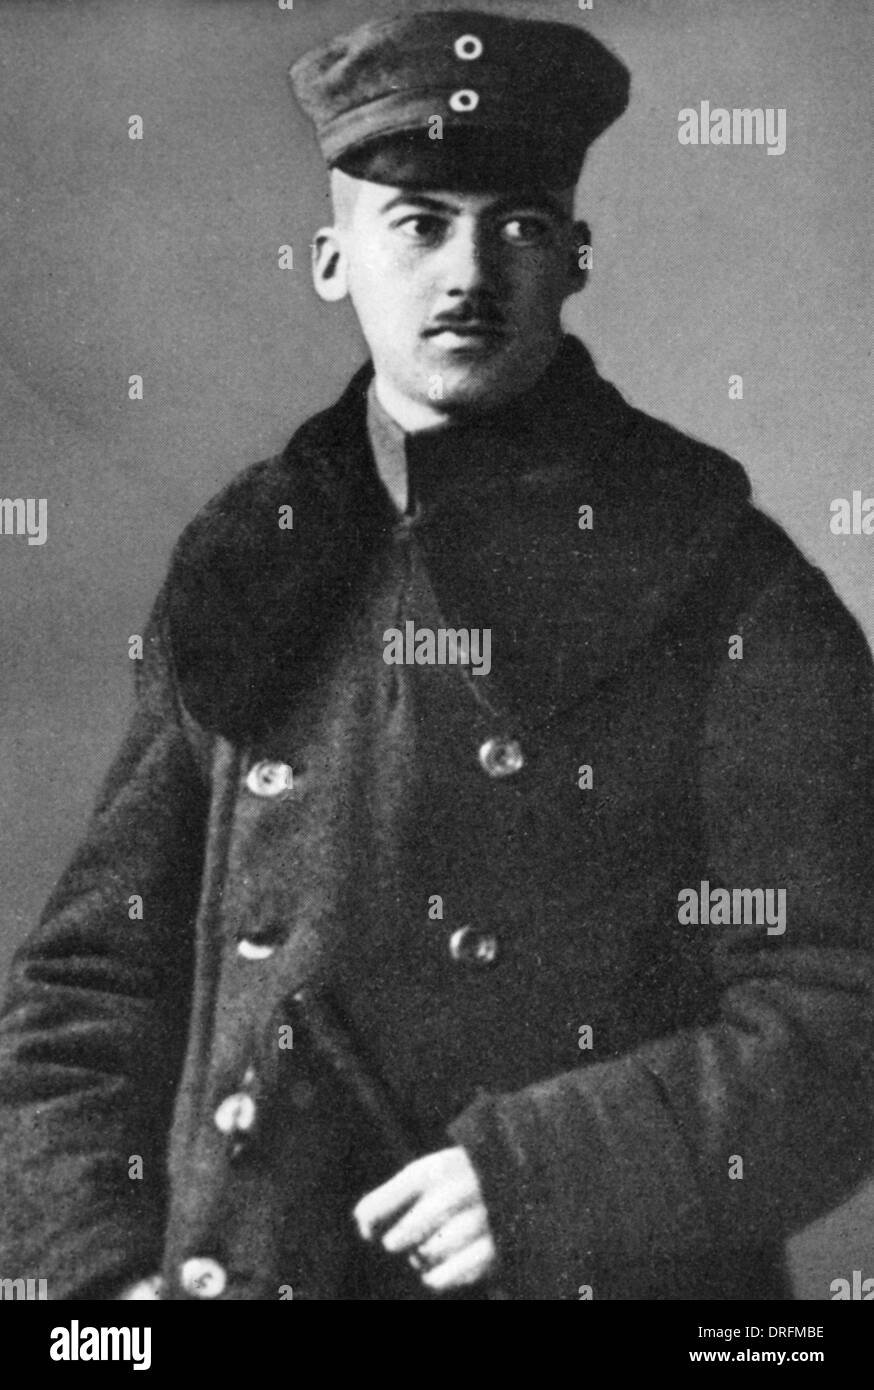 Franz Pfeffer von Salomon, German army officer Stock Photo